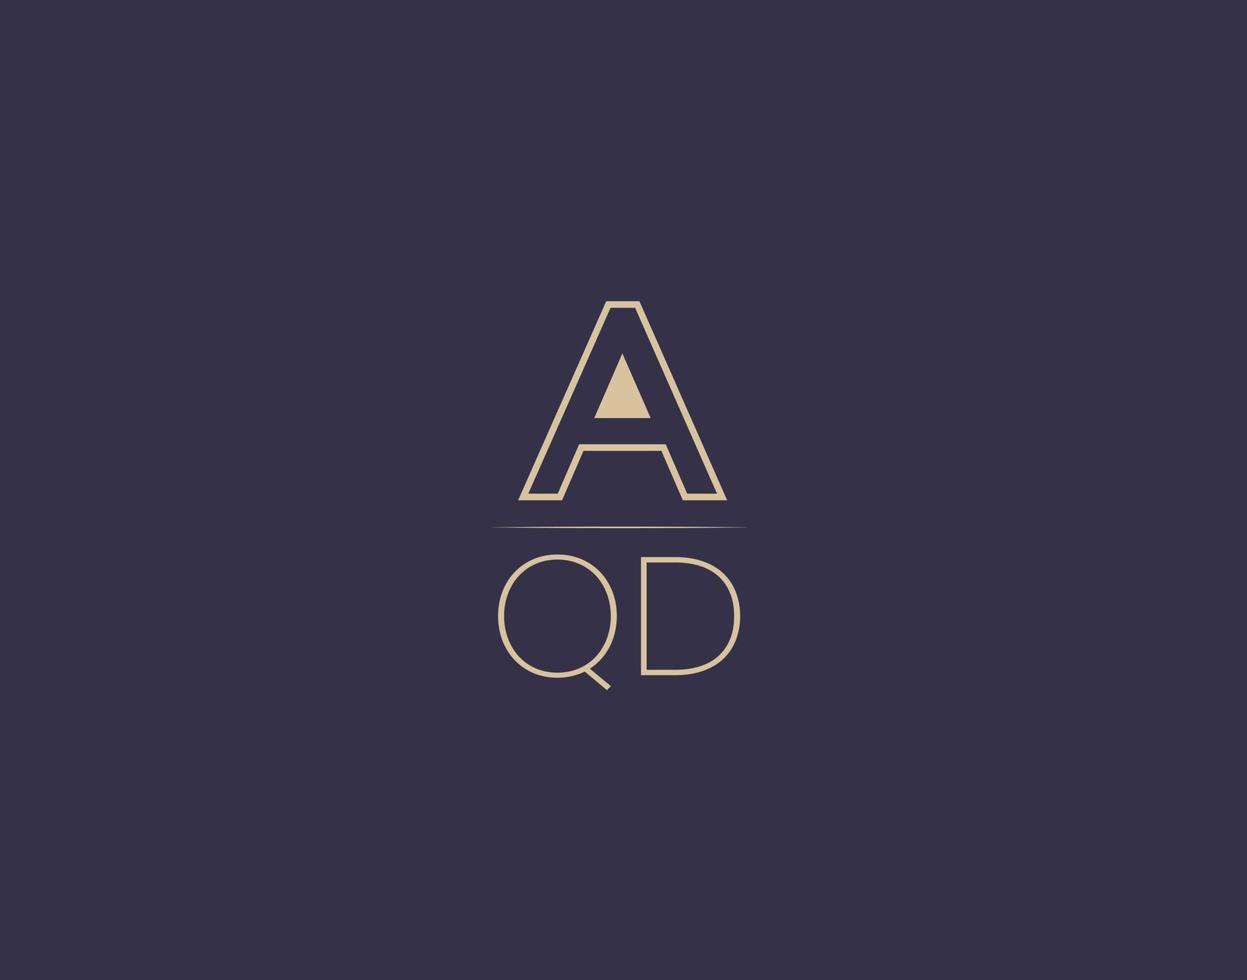 aqd carta logo diseño moderno minimalista vector imágenes